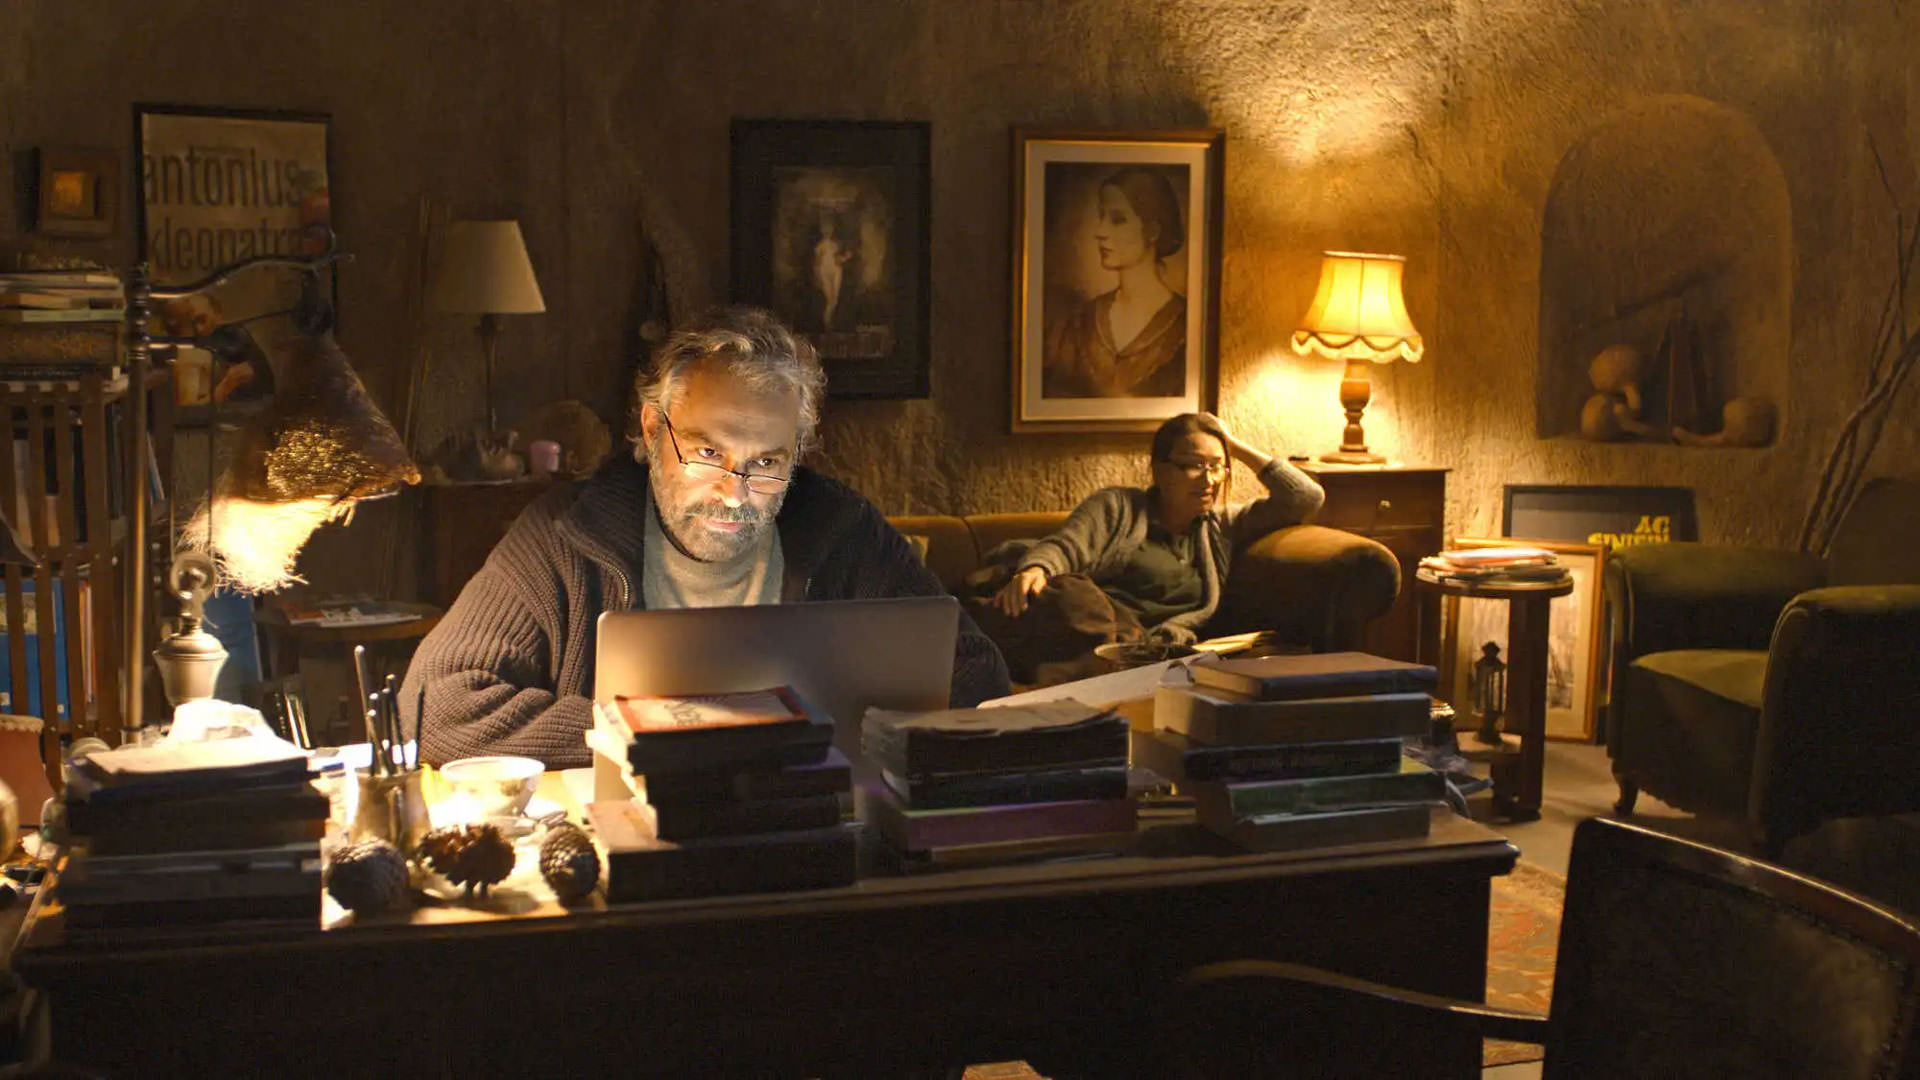 هالوک بیلگینر نشسته پشت میز کار در حال نوشتن با لپ‌تاپ در اتاقی که نورپردازی زرد دارد در حالی که دمت آکباع پشت سرش روی کاناپه نشسته است در نمایی از فیلم خواب زمستانی به کارگردانی نوری بیلگه جیلان